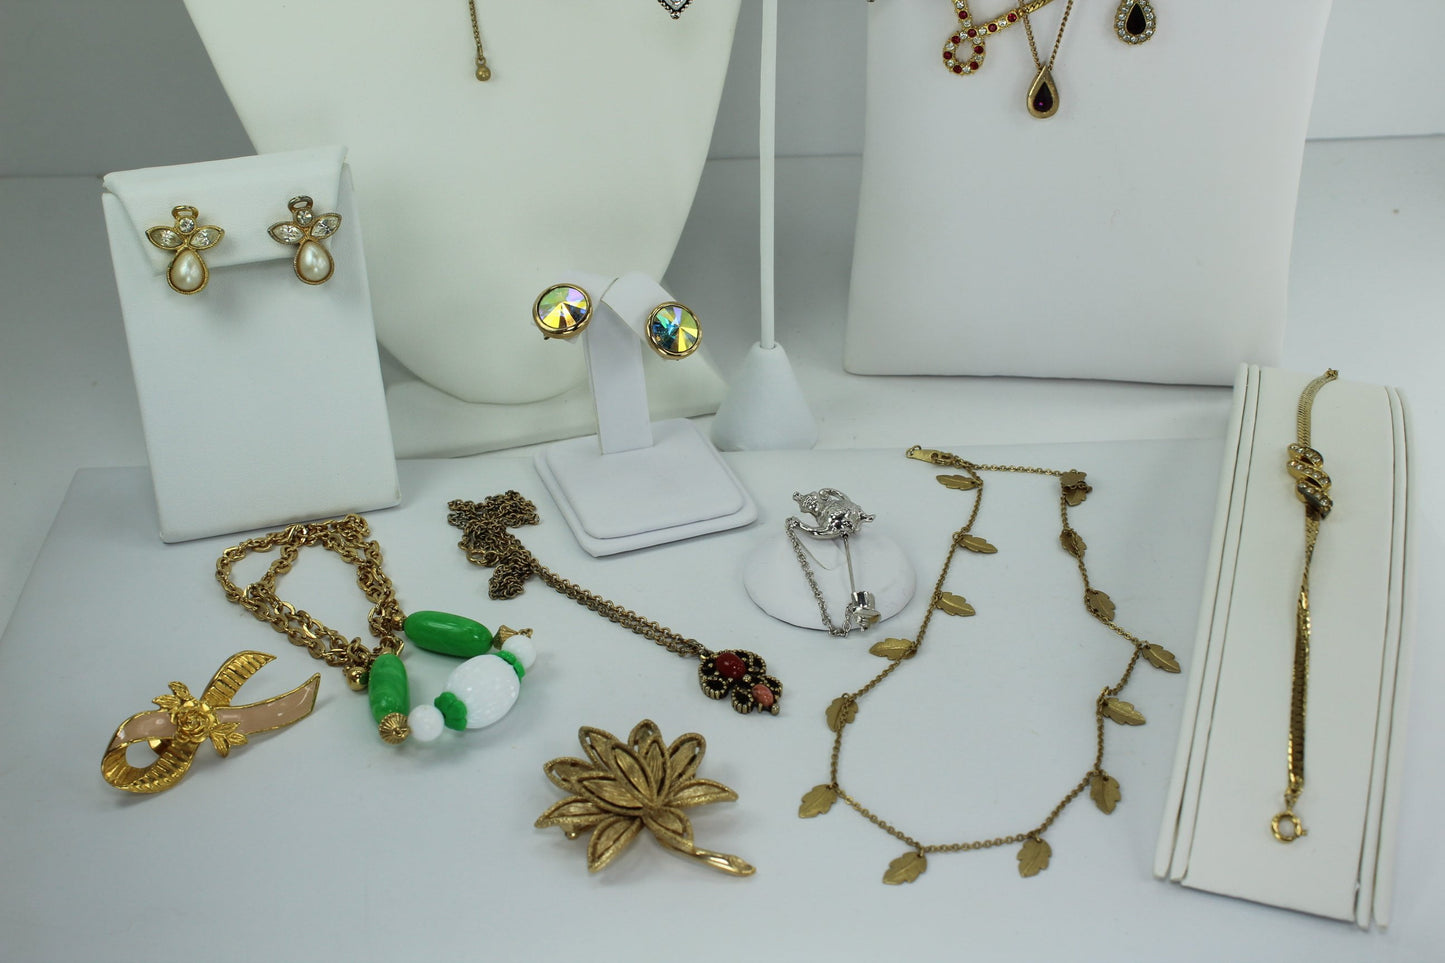 Vintage AVON Jewelry Lot 17 Pieces Wearables Resales Necklaces Bracelet Pins ER earrings